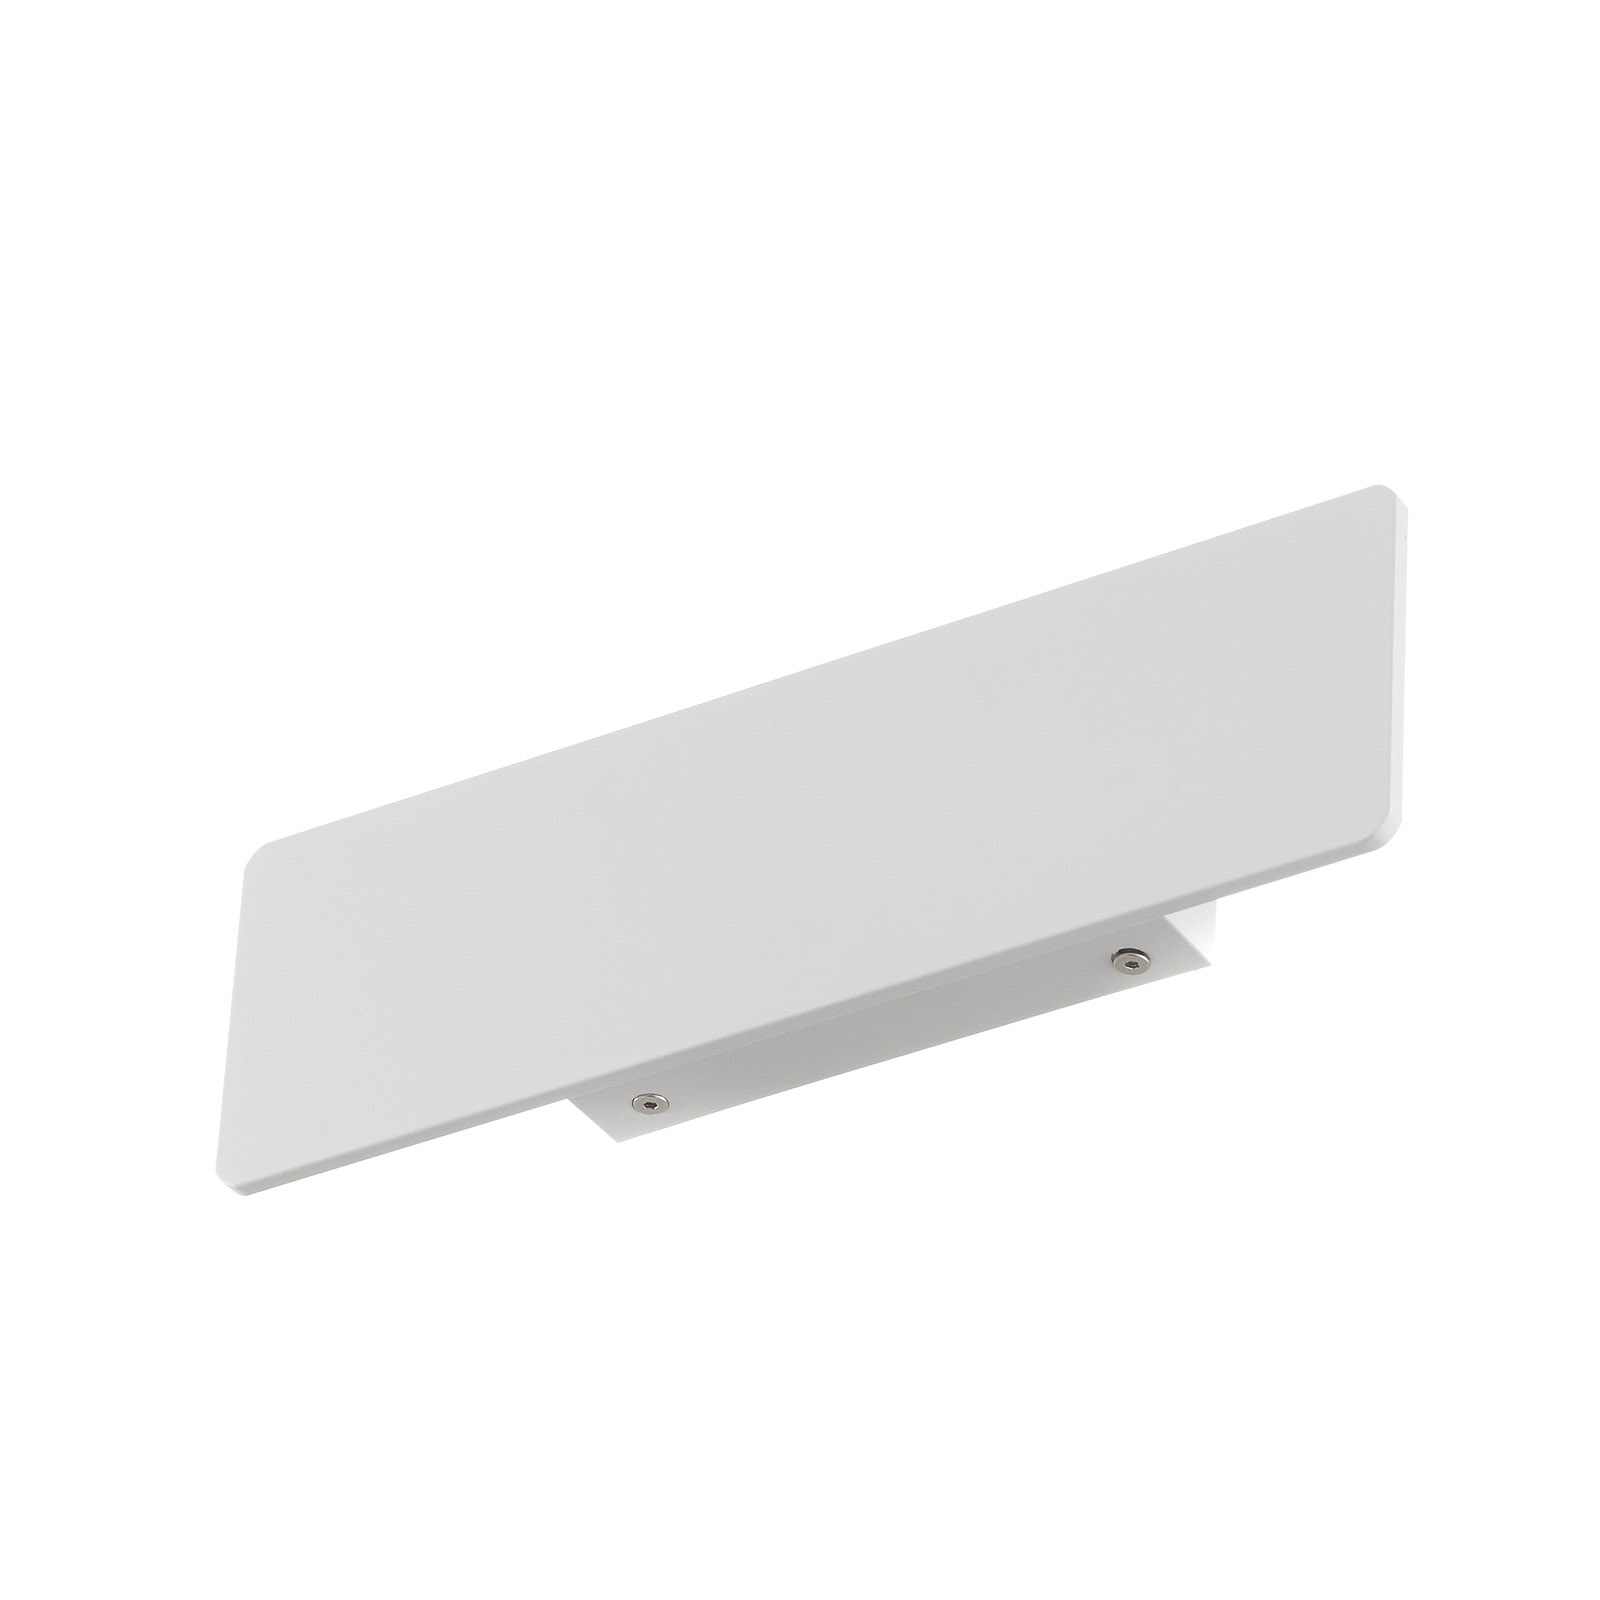 Ideal Lux LED-Wandleuchte Zig Zag weiß, Breite 29 cm